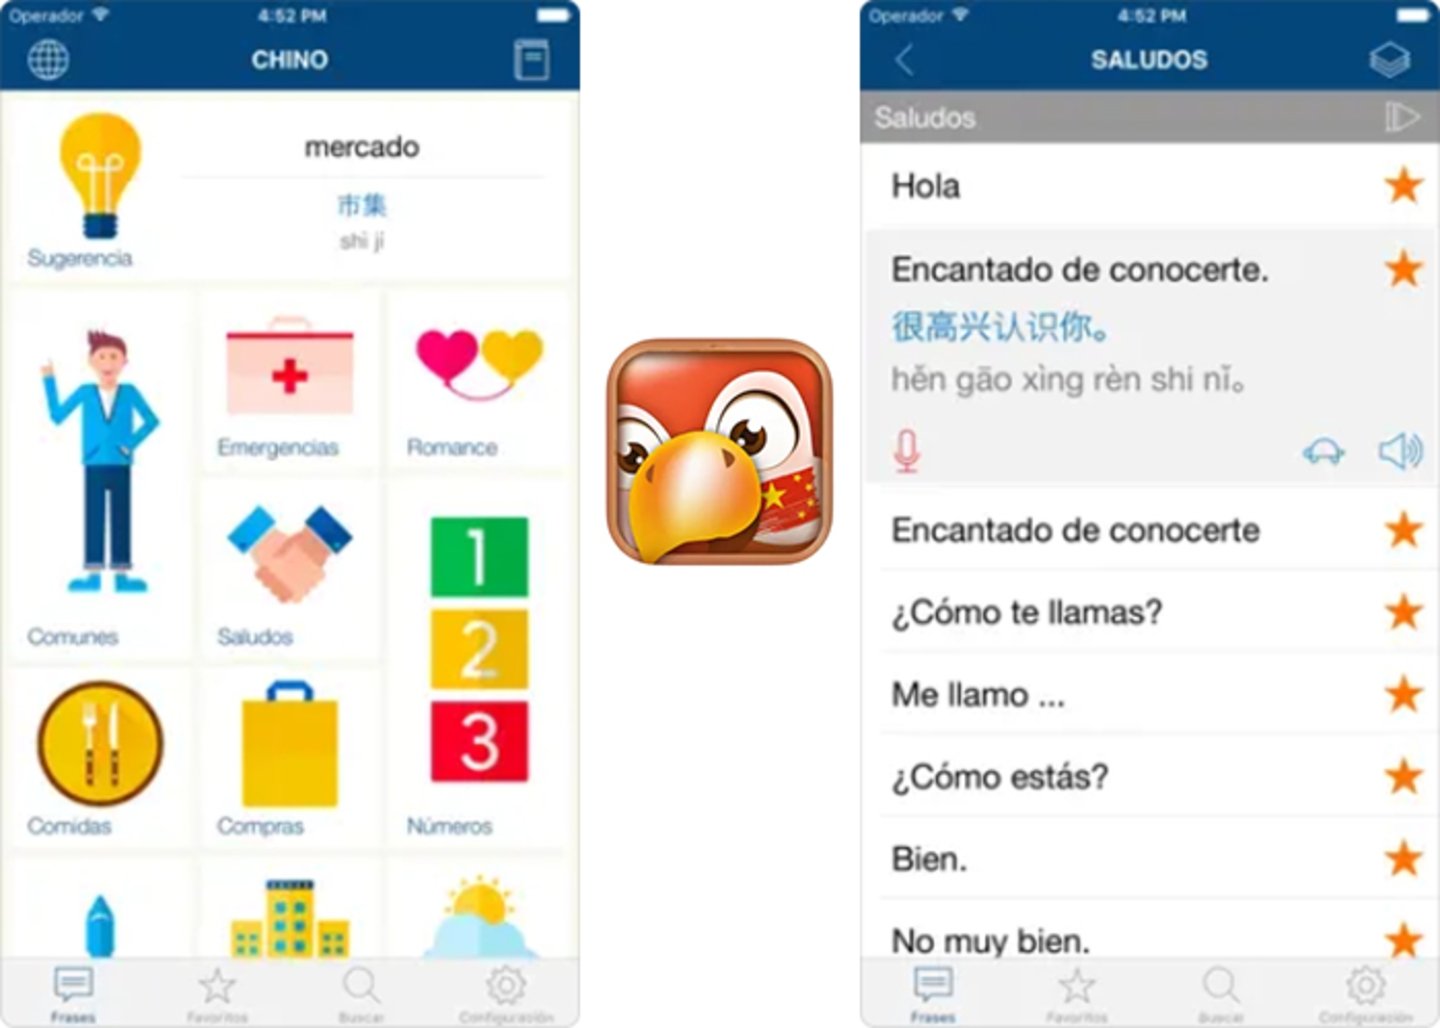 Explora el encanto del mandarin- aprende chino en español y enamorate del idioma